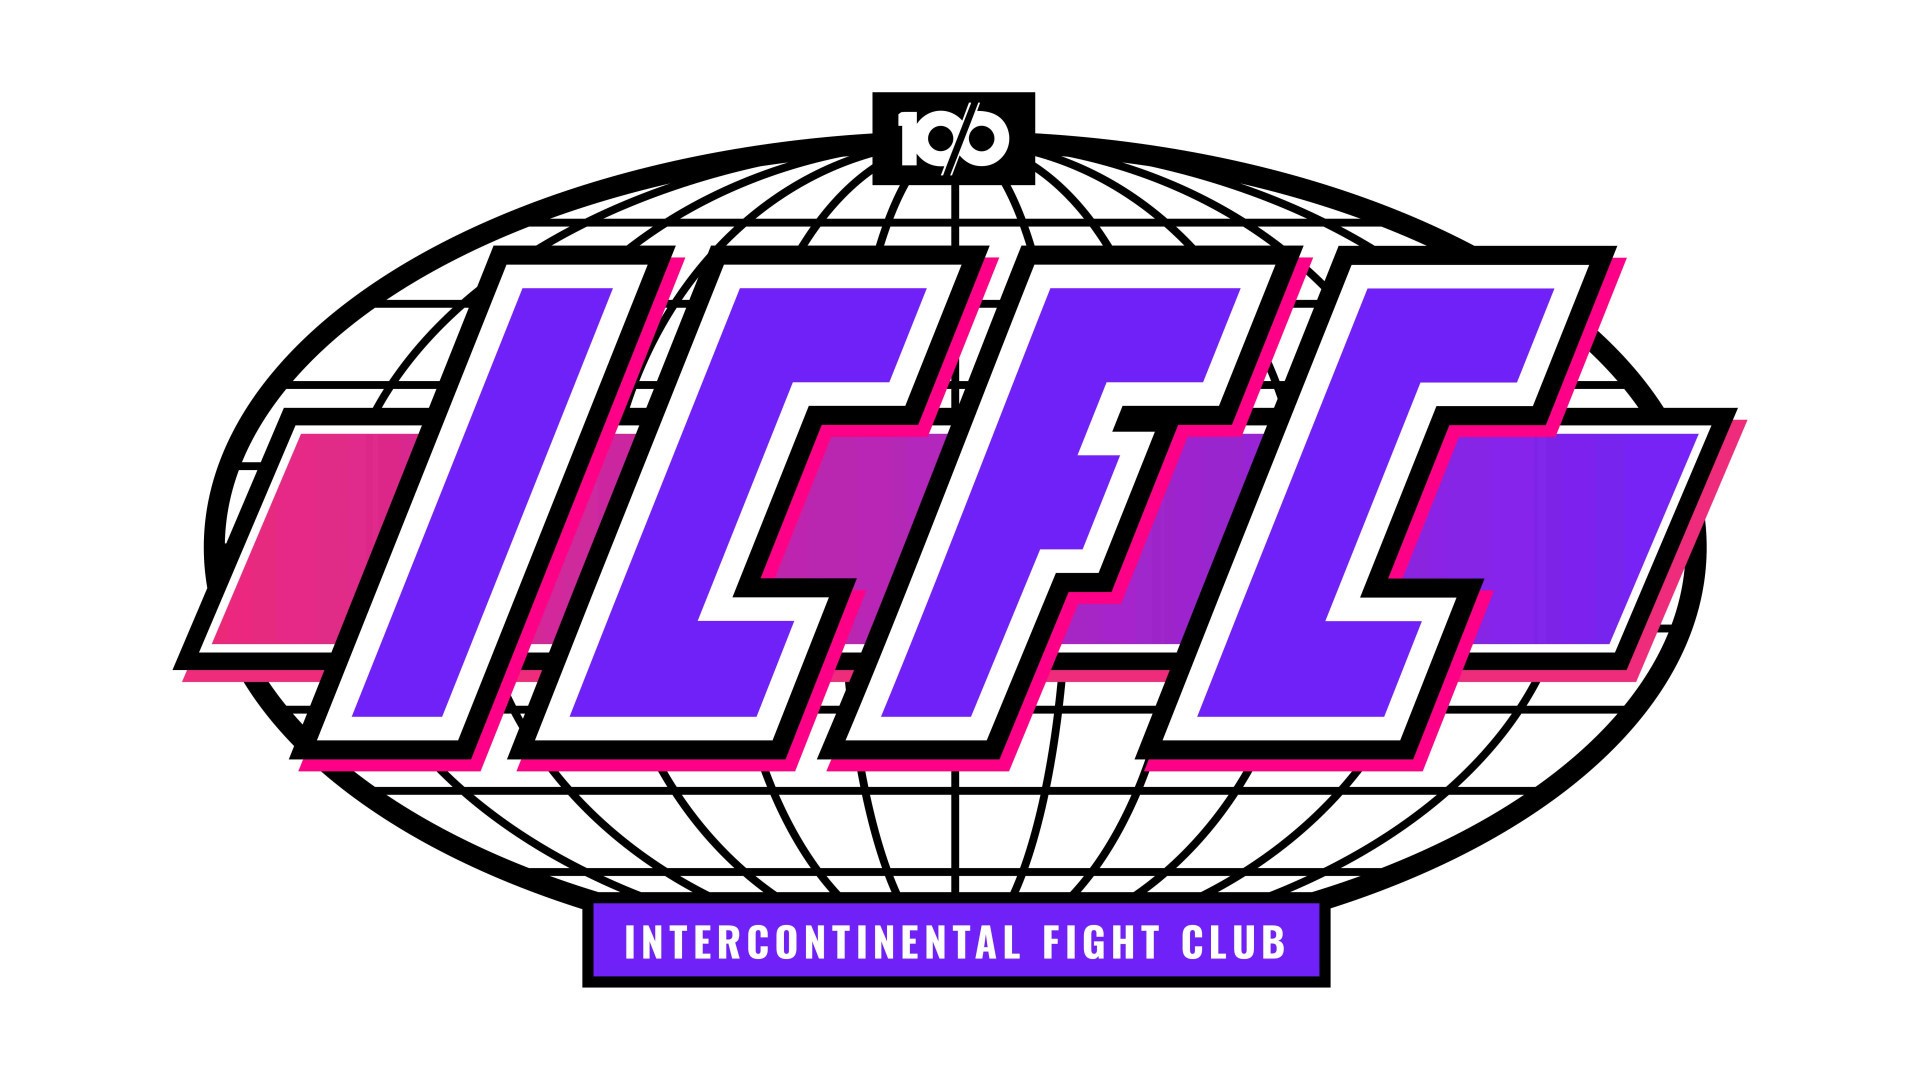 《拳皇 XV》官方線上比賽「KOF XV ICFC Weekly Series」5/26 開賽 角逐亞美歐區域冠軍